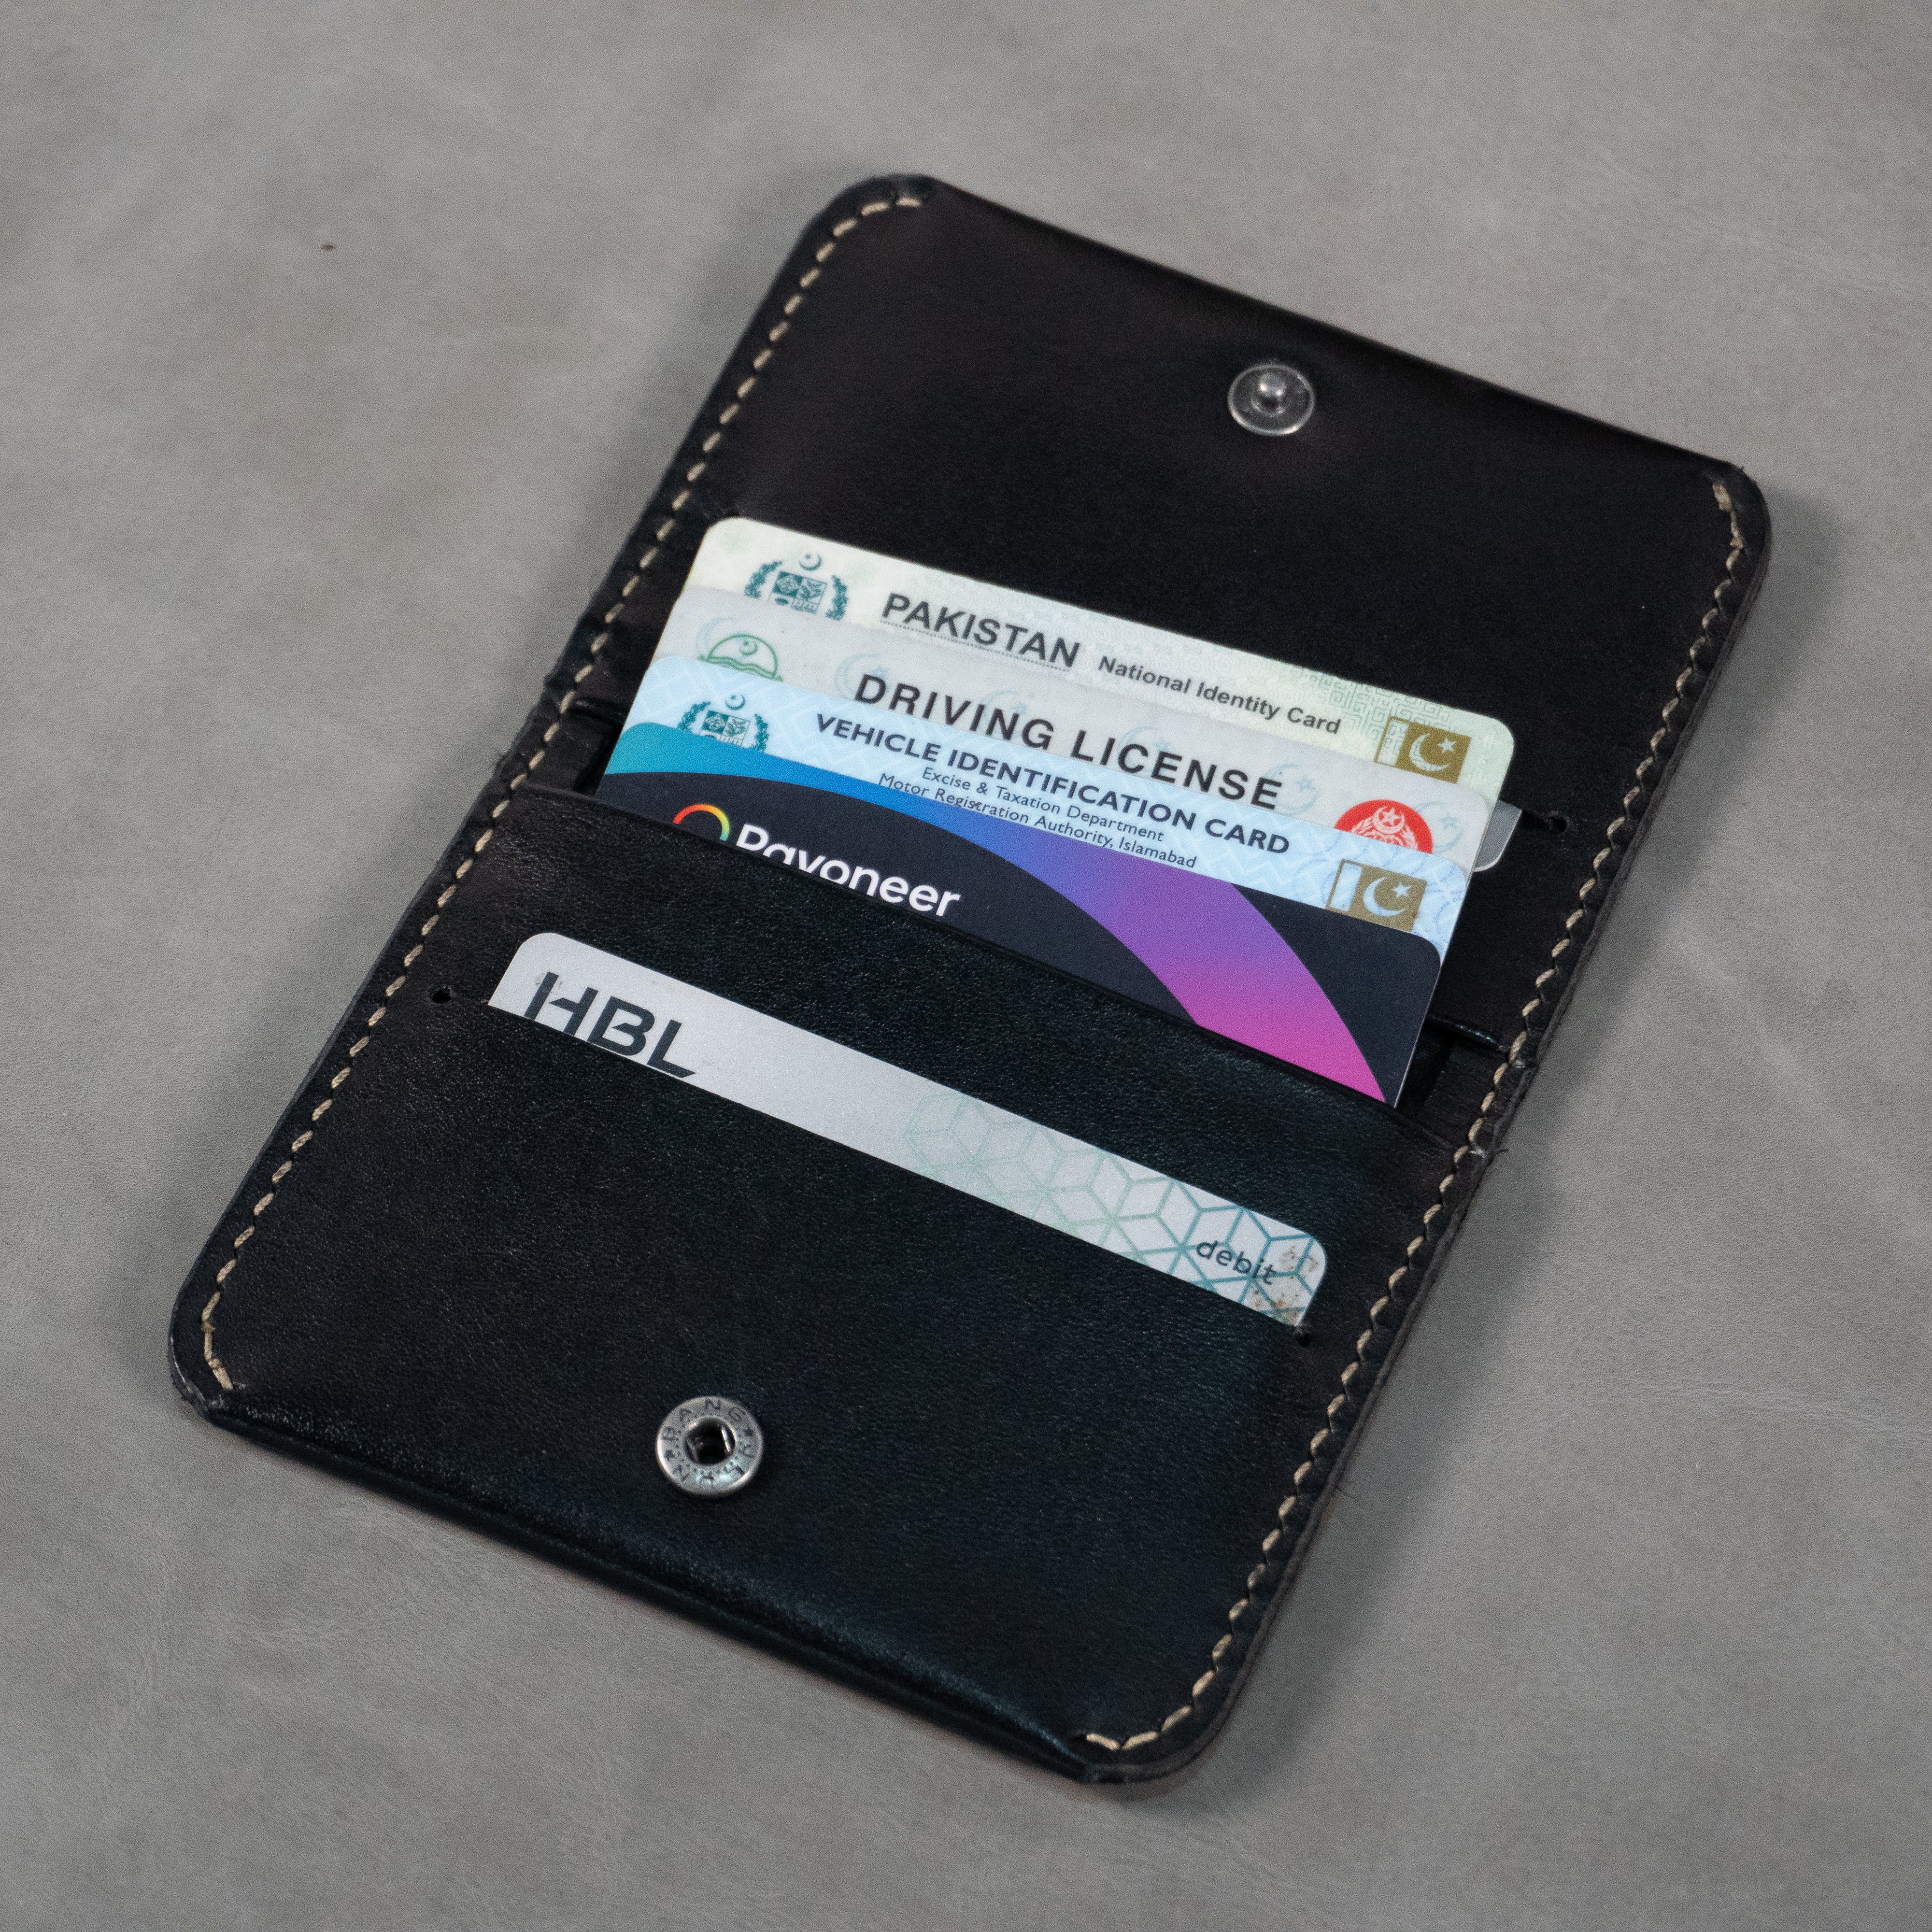 No. 85 Slim EverCard Wallet ( Black color)